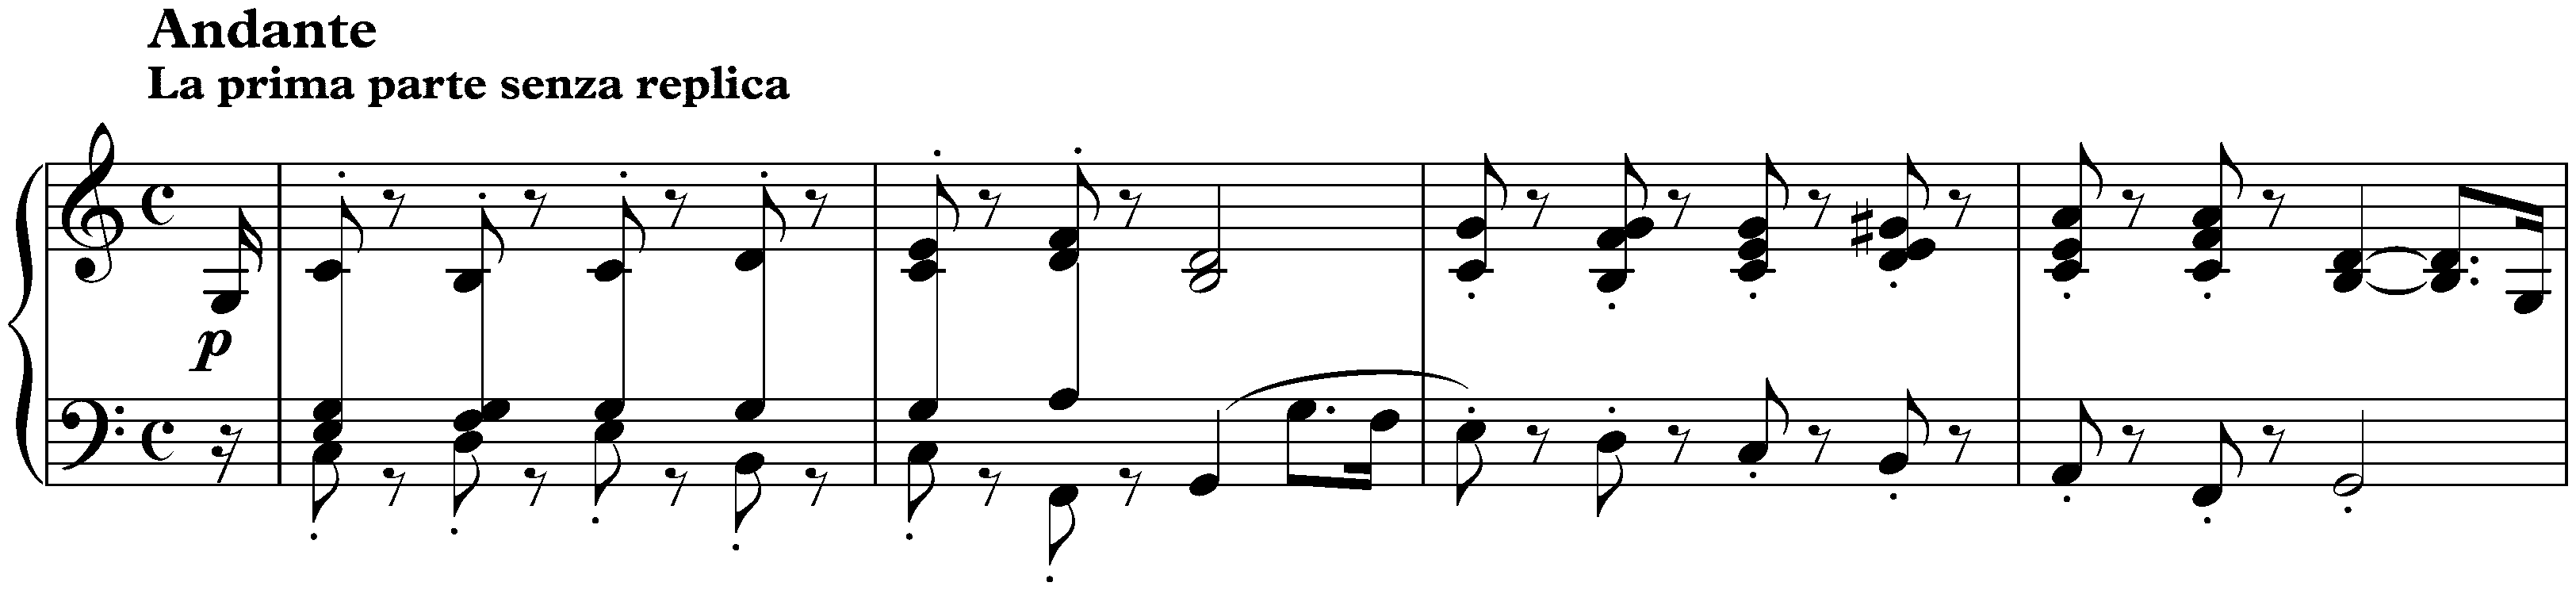 Sonata no. 10 in G major, op. 14 no. 2; 2. Andante